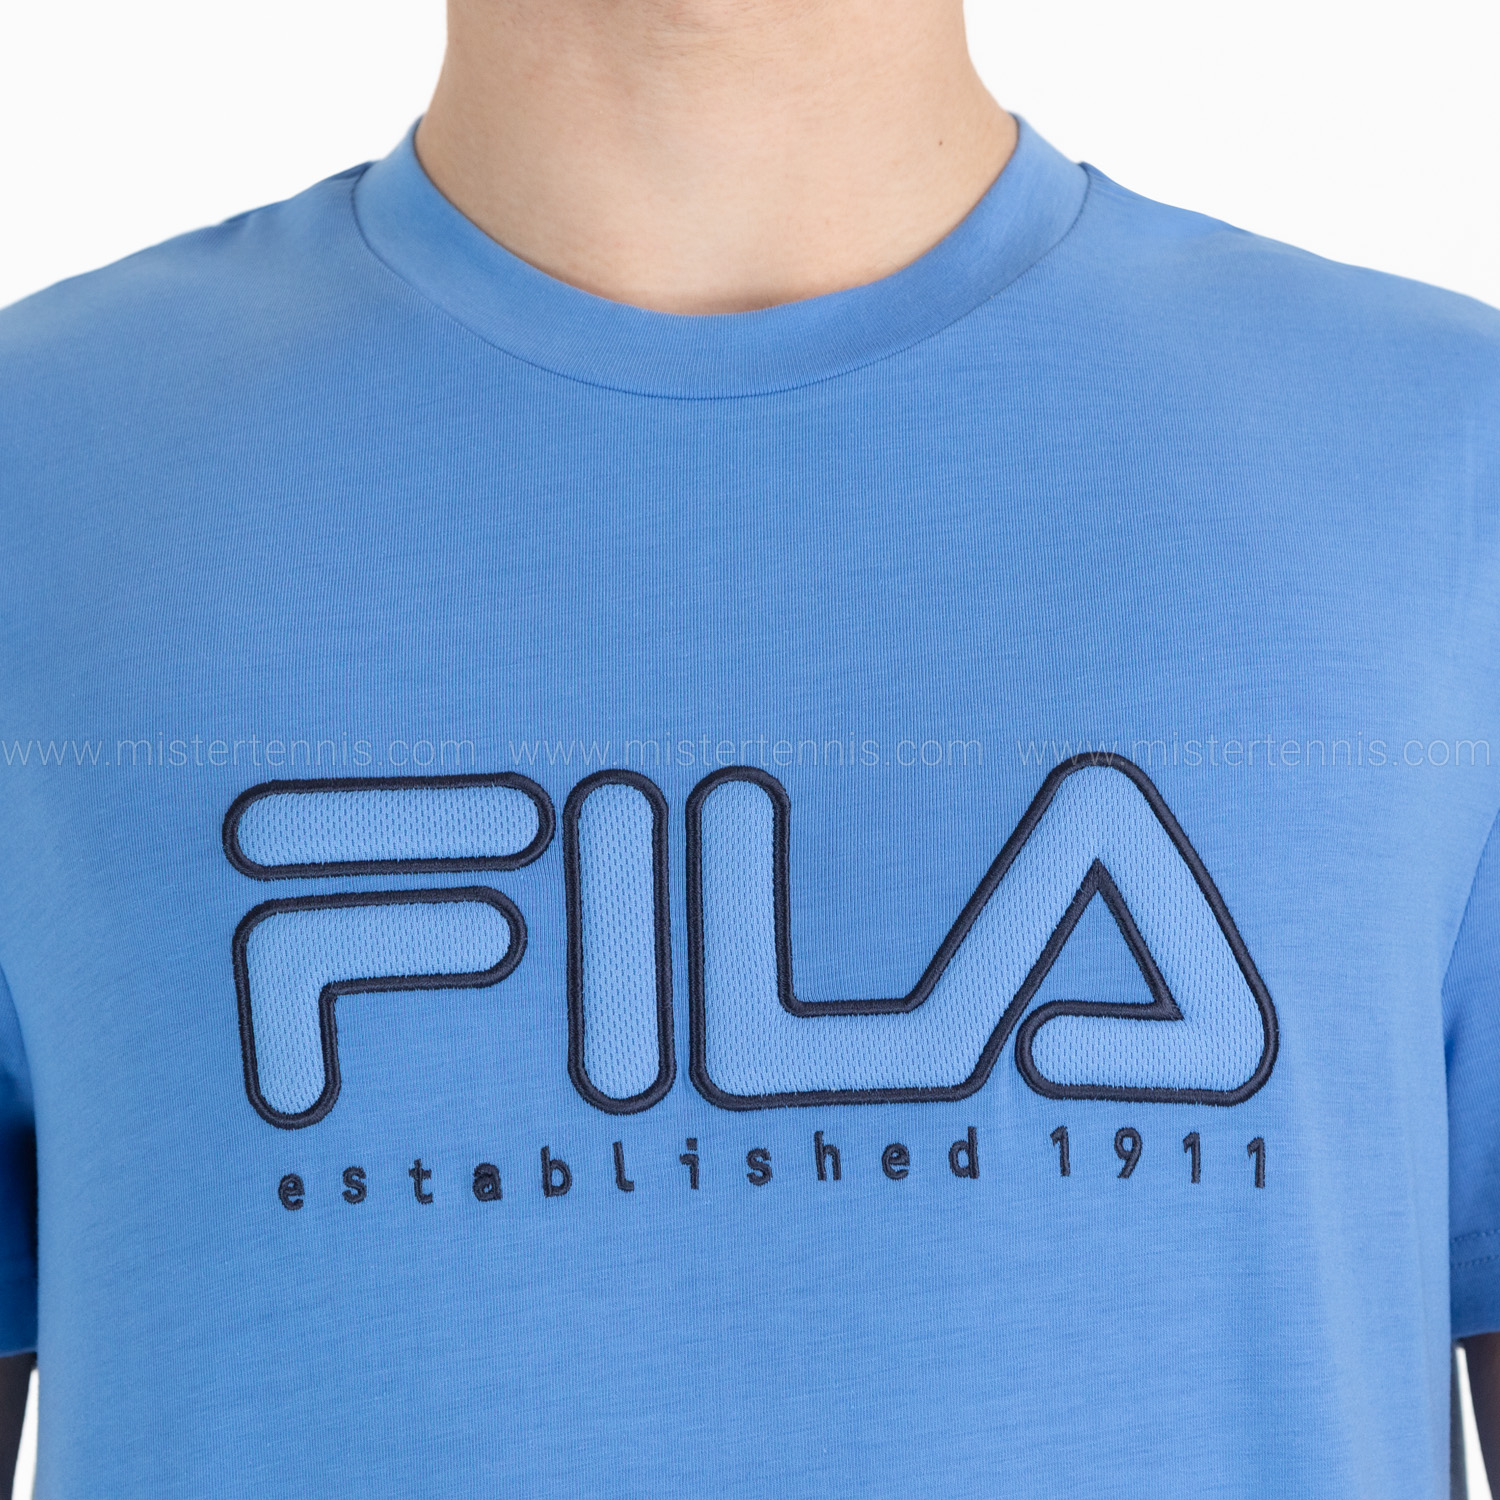 Fila Felix Camiseta - Marina